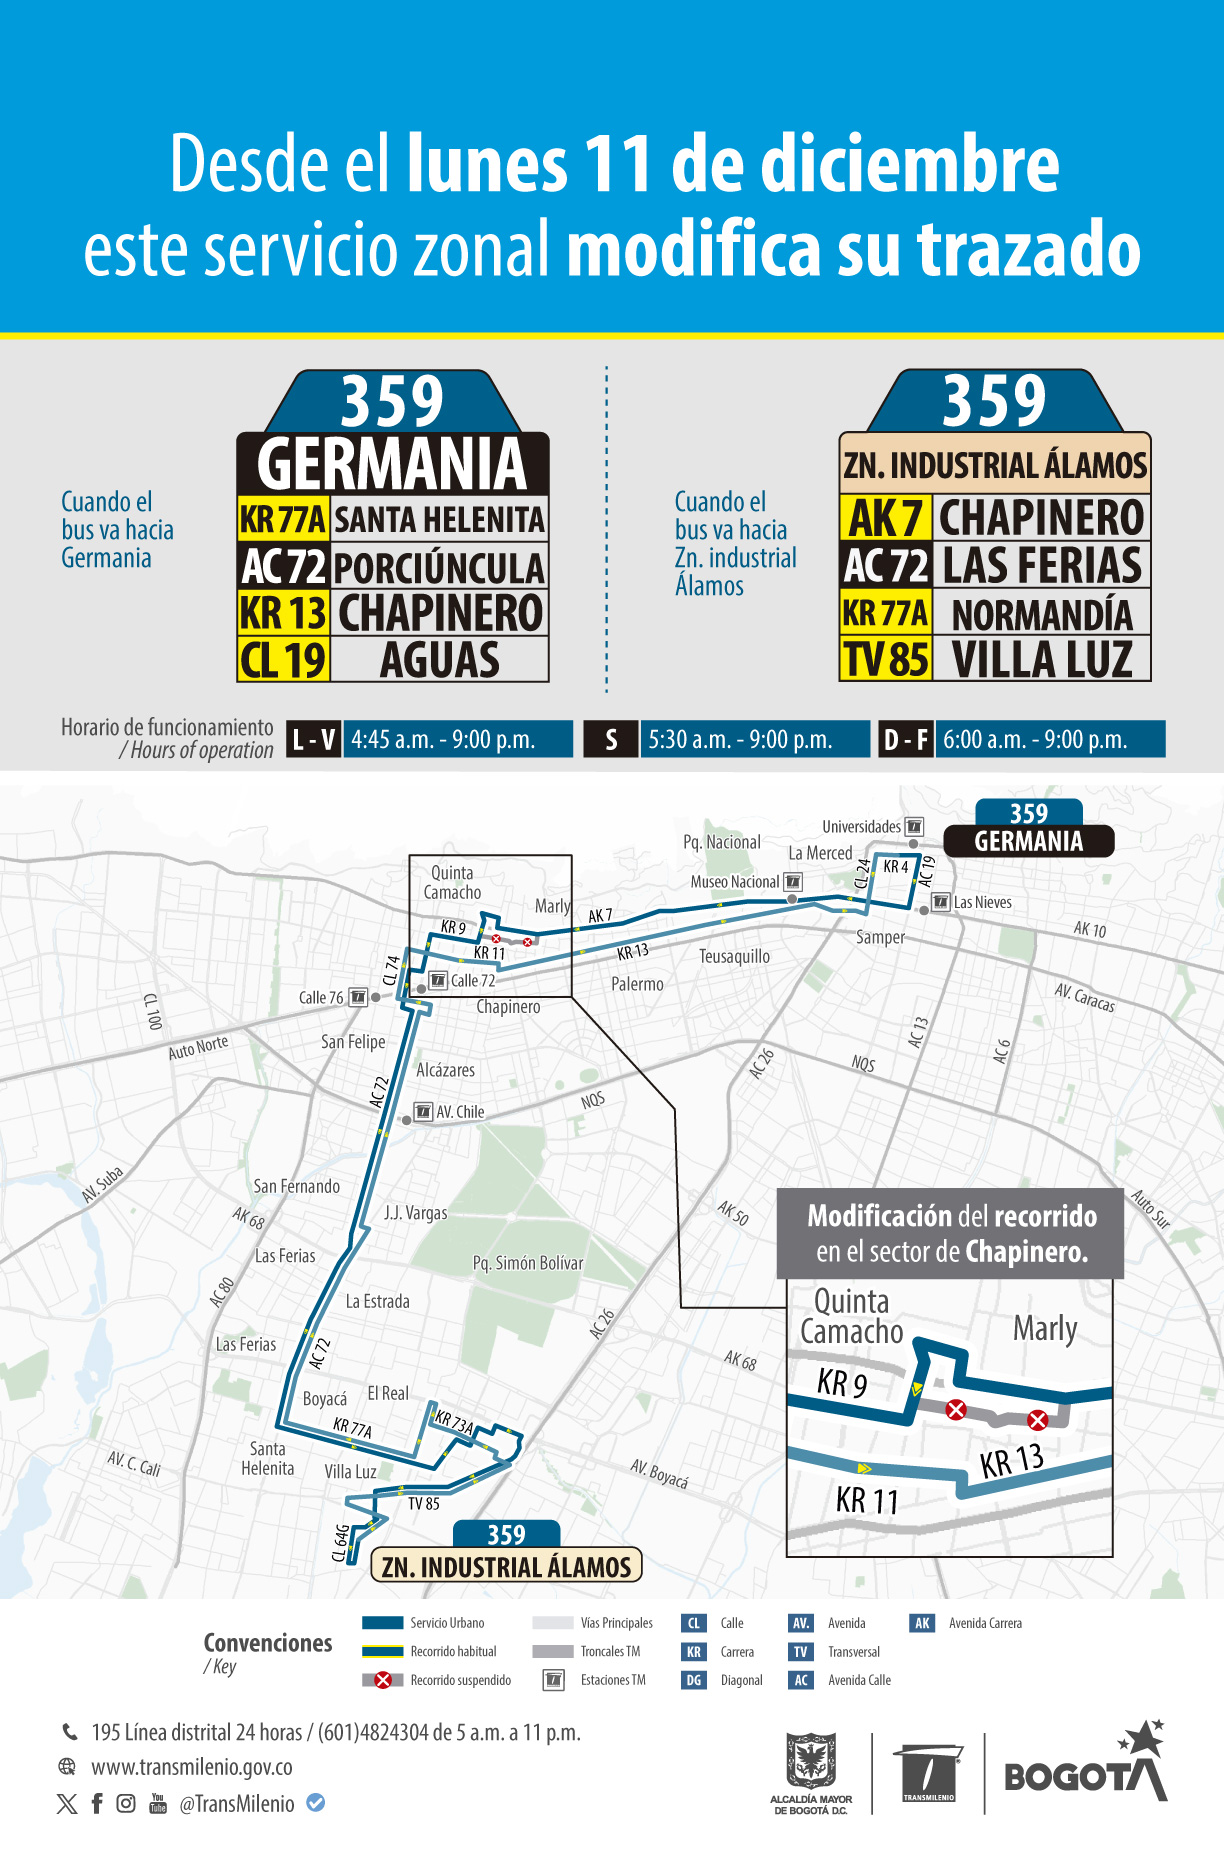 Ruta zonal 359 Germania - 359 Zona Industrial Álamos modifica su operación